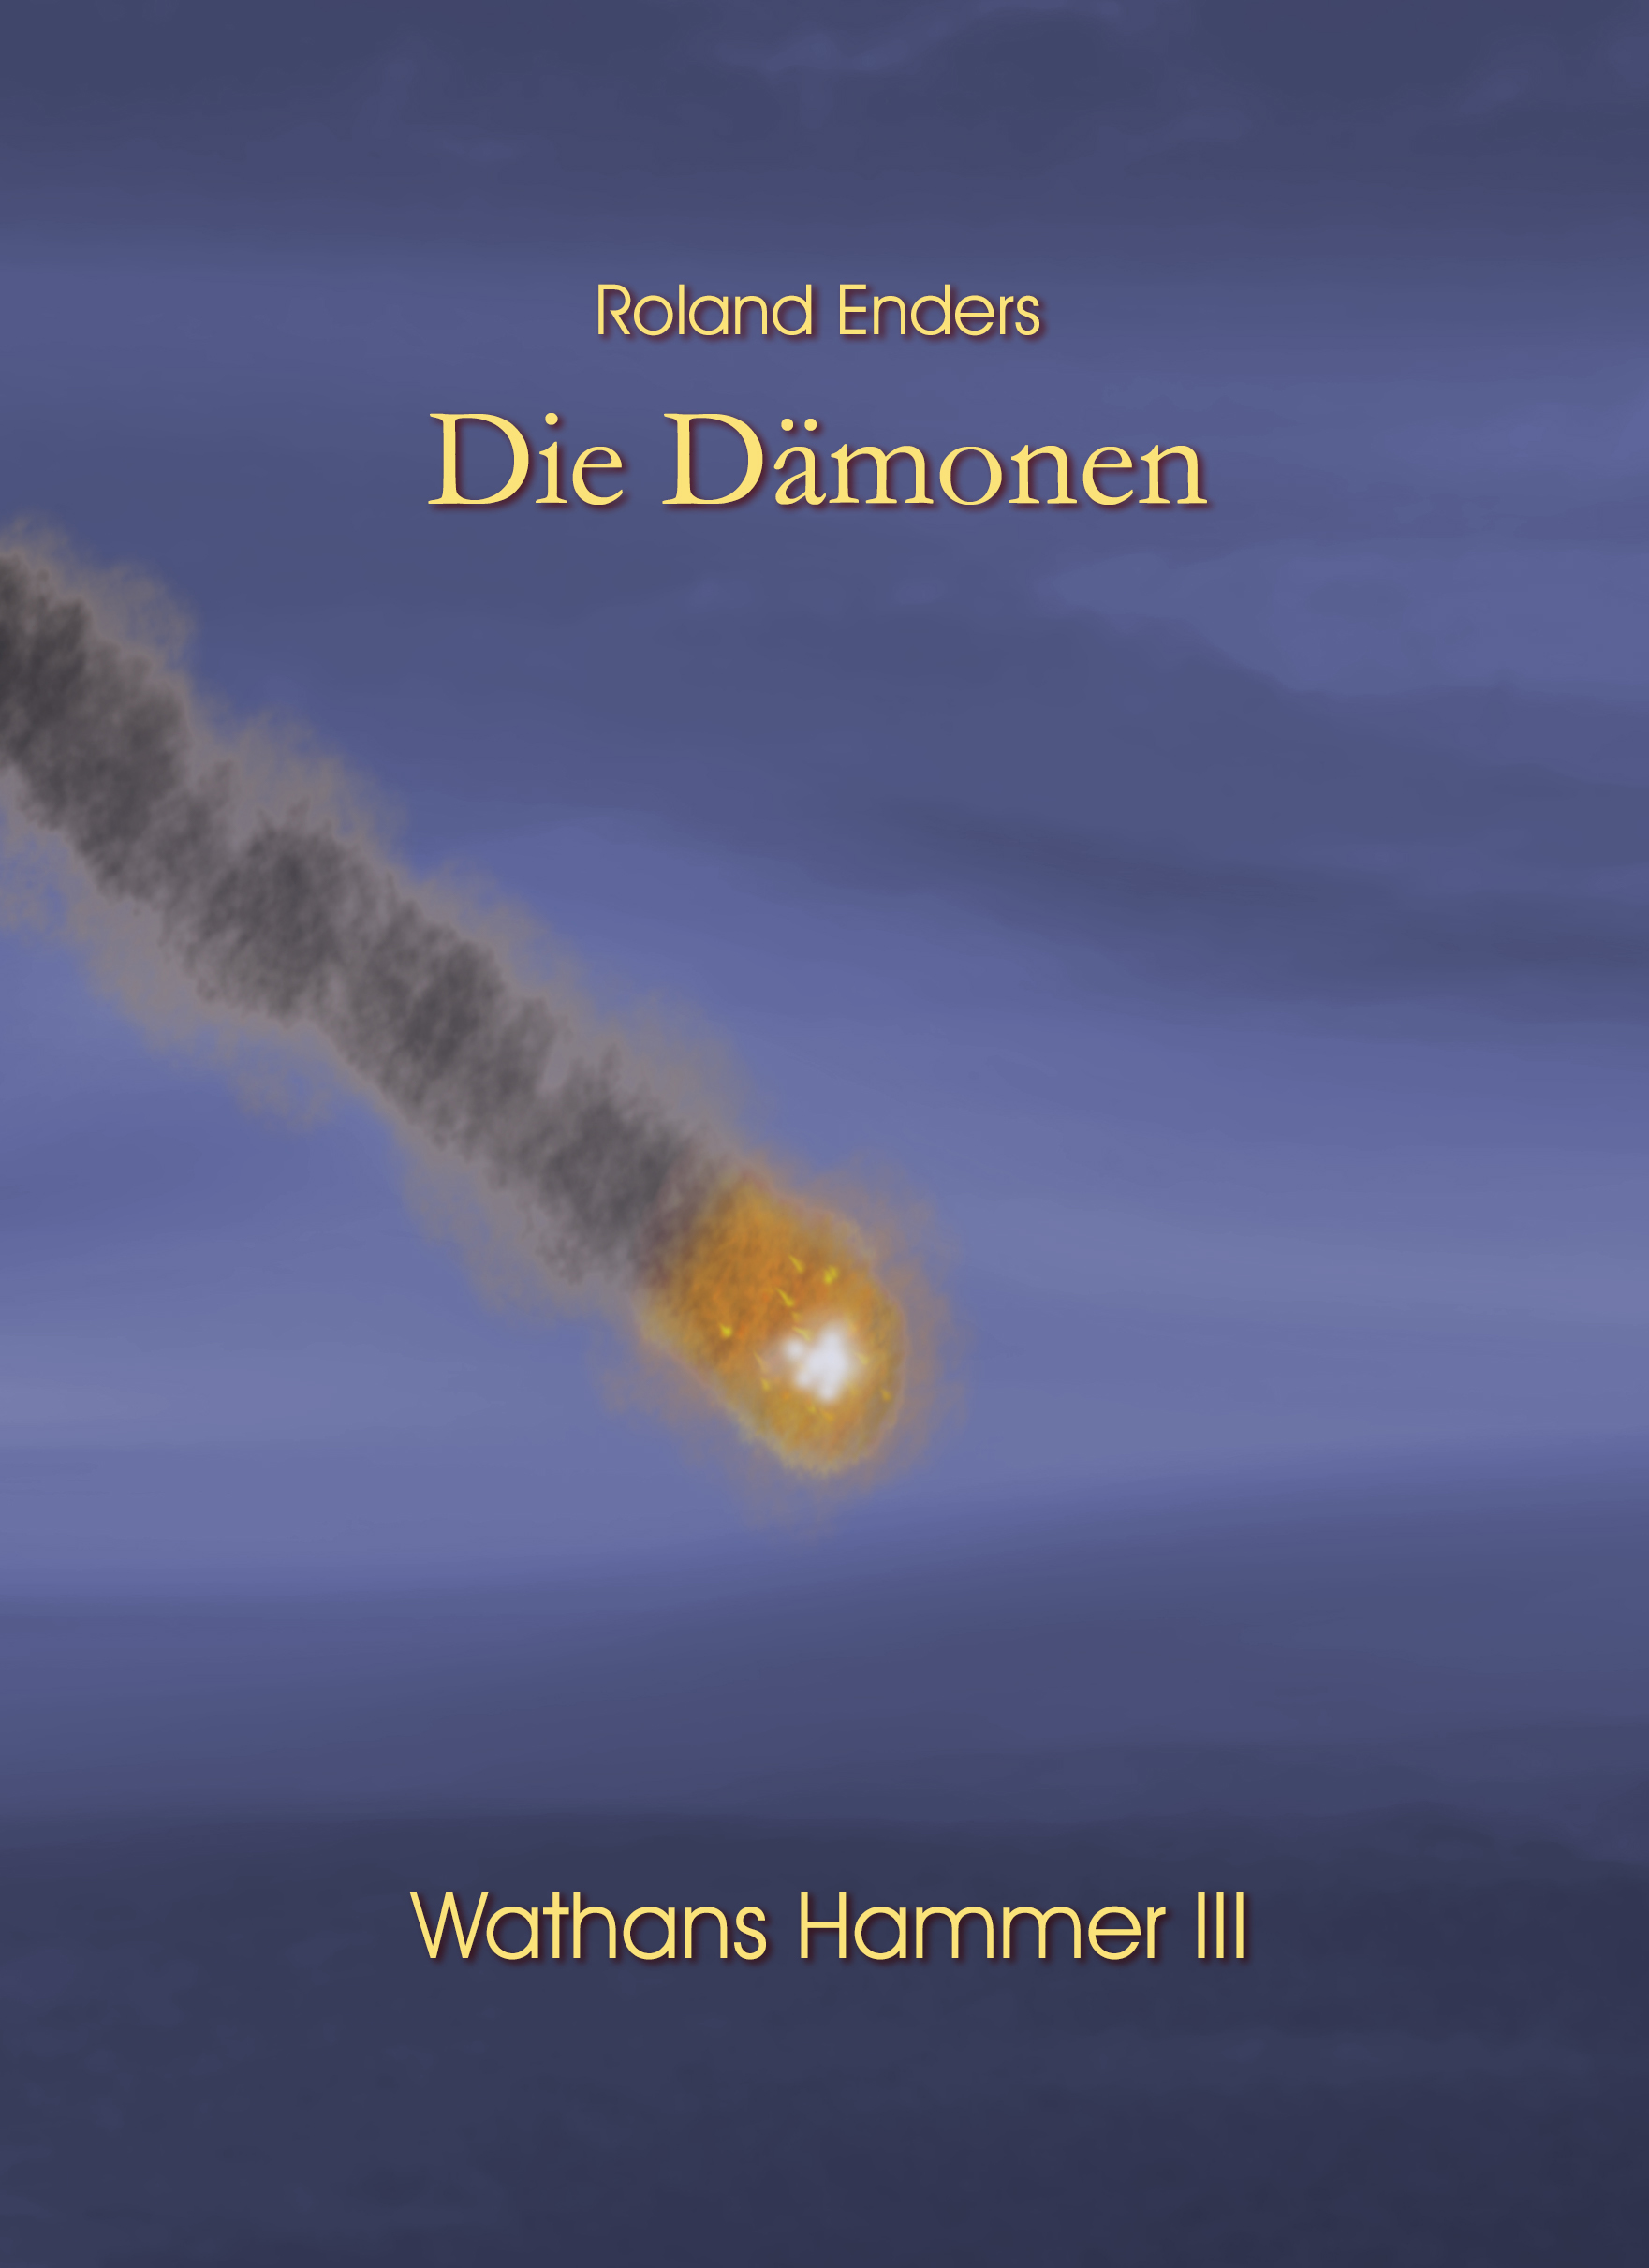 Wathans Hammer III